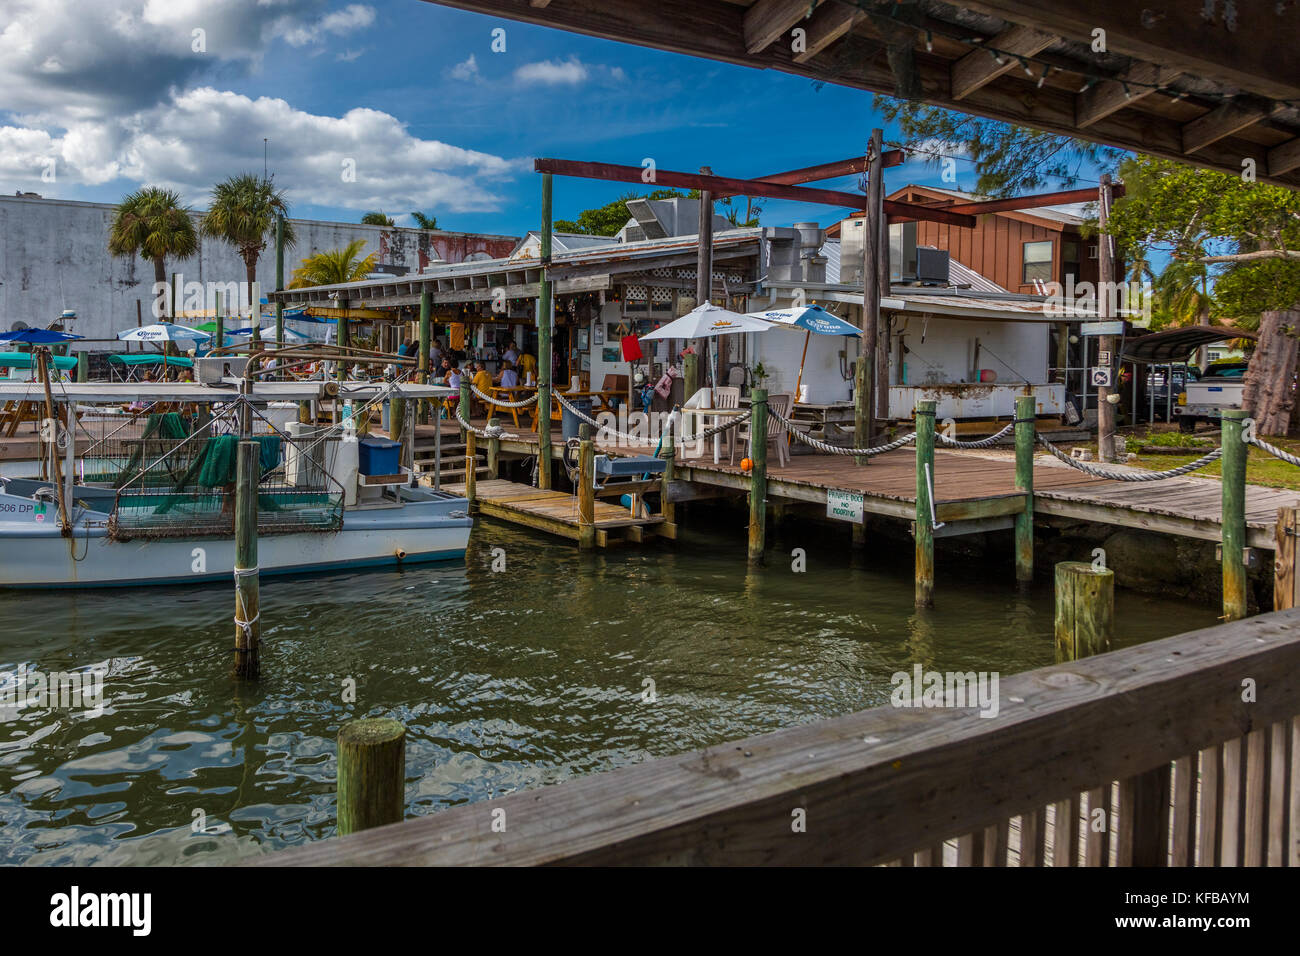 Stella di mare co mercato di frutti di mare e procedure Dockside ristorante in Florida storico villaggio di pescatori di cortez negli stati uniti Foto Stock